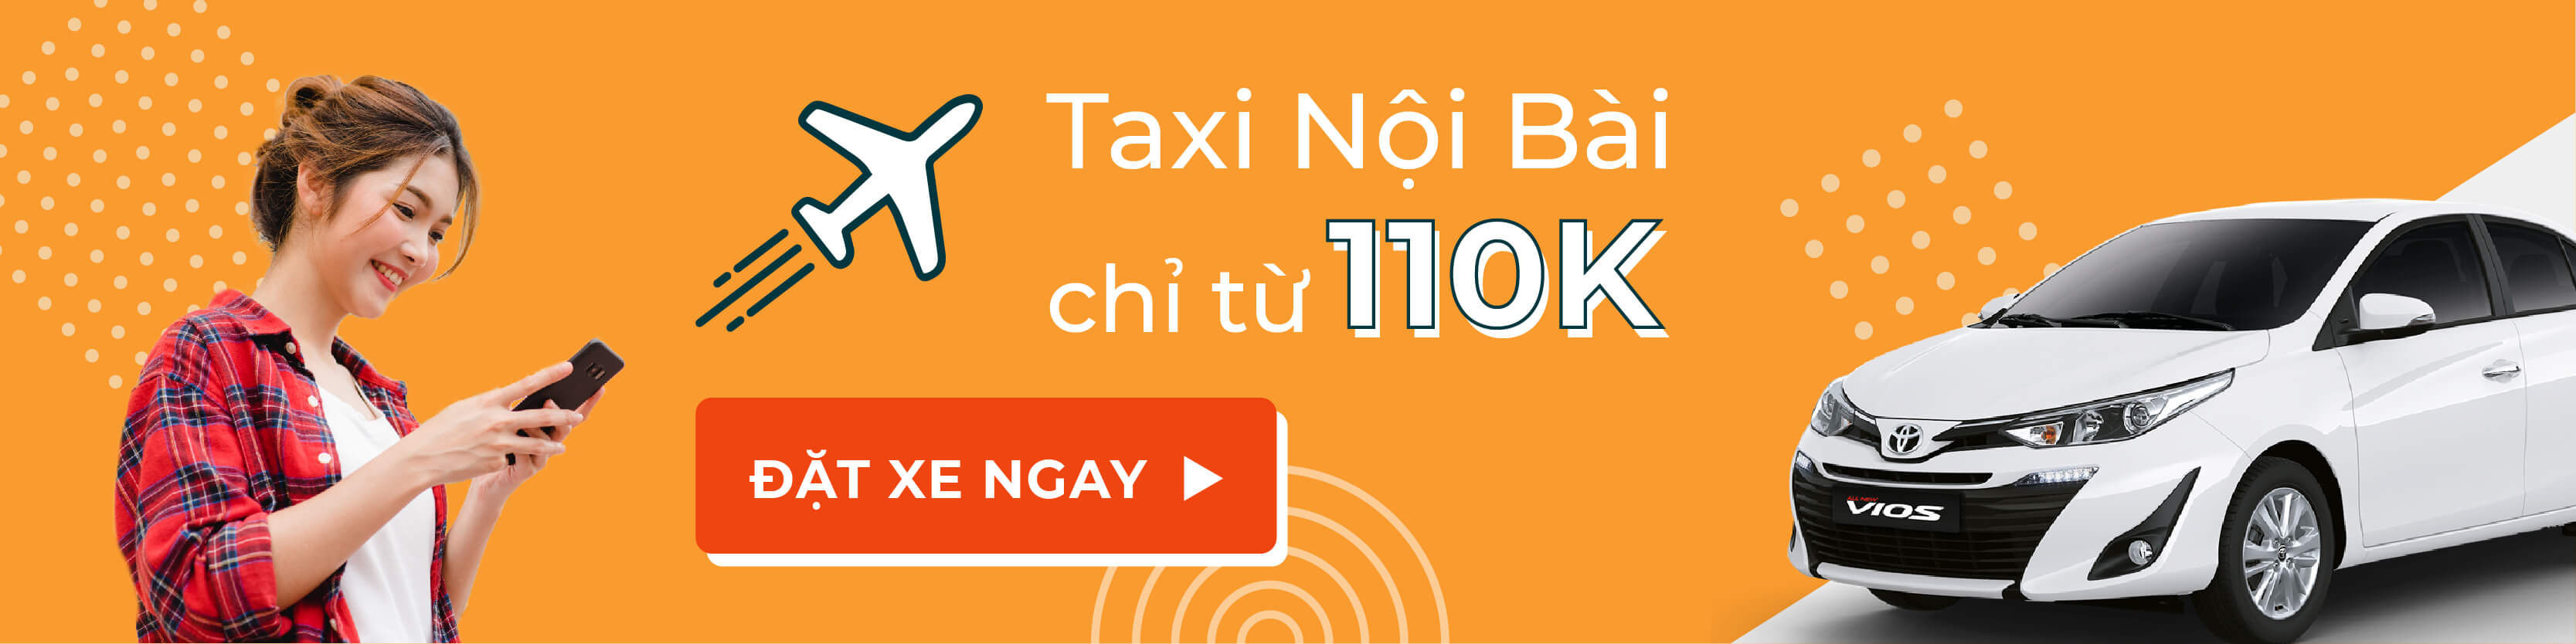 taxi Nội Bài 110K